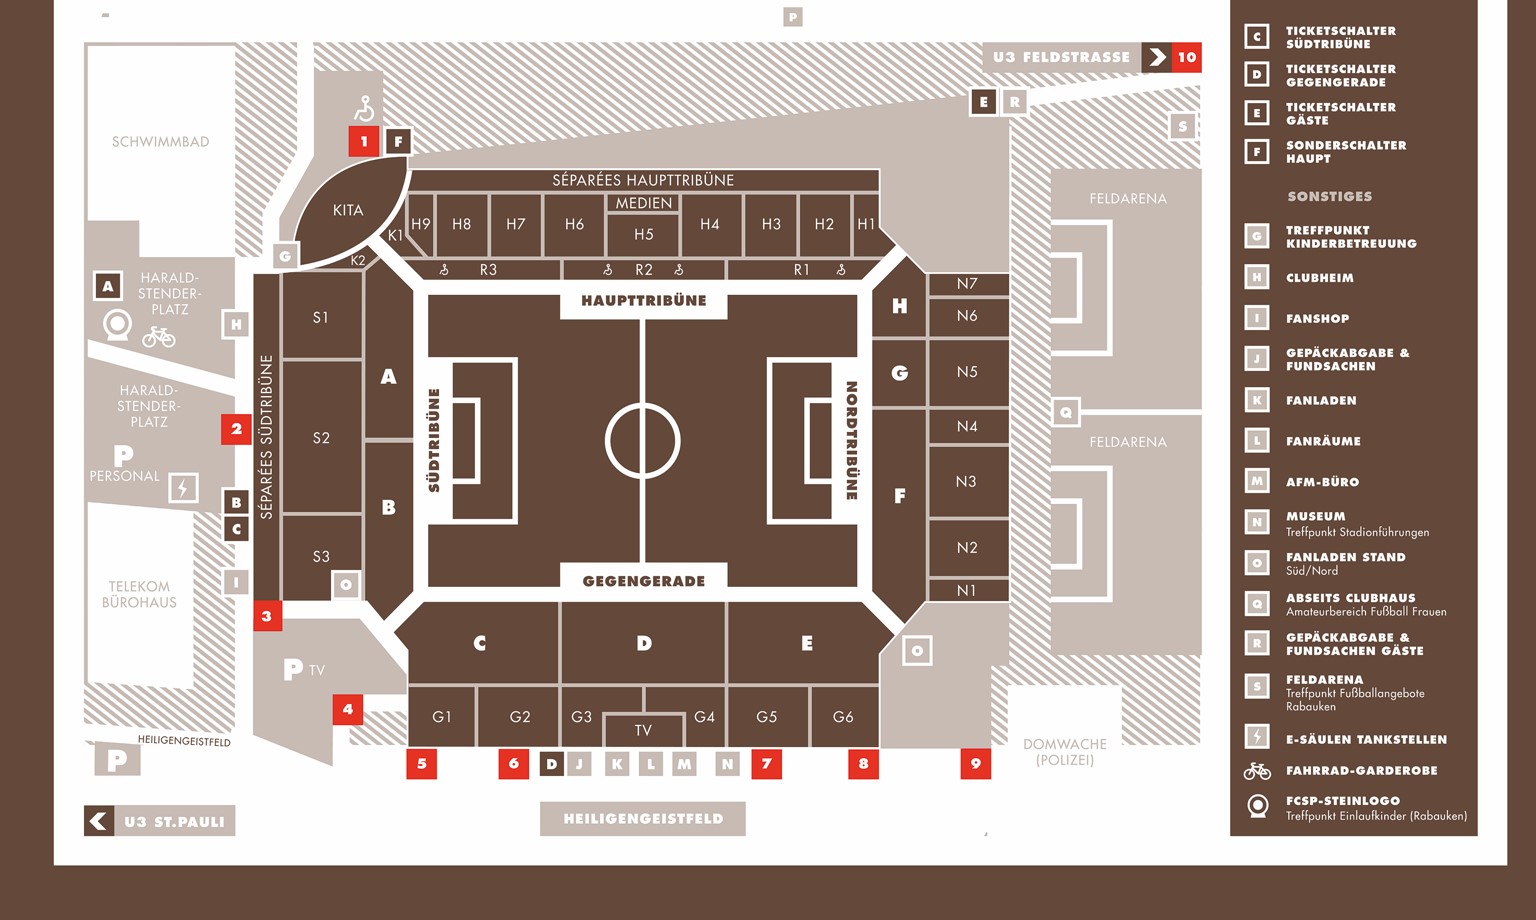 Der Stadionplan des Millerntor-Stadions.